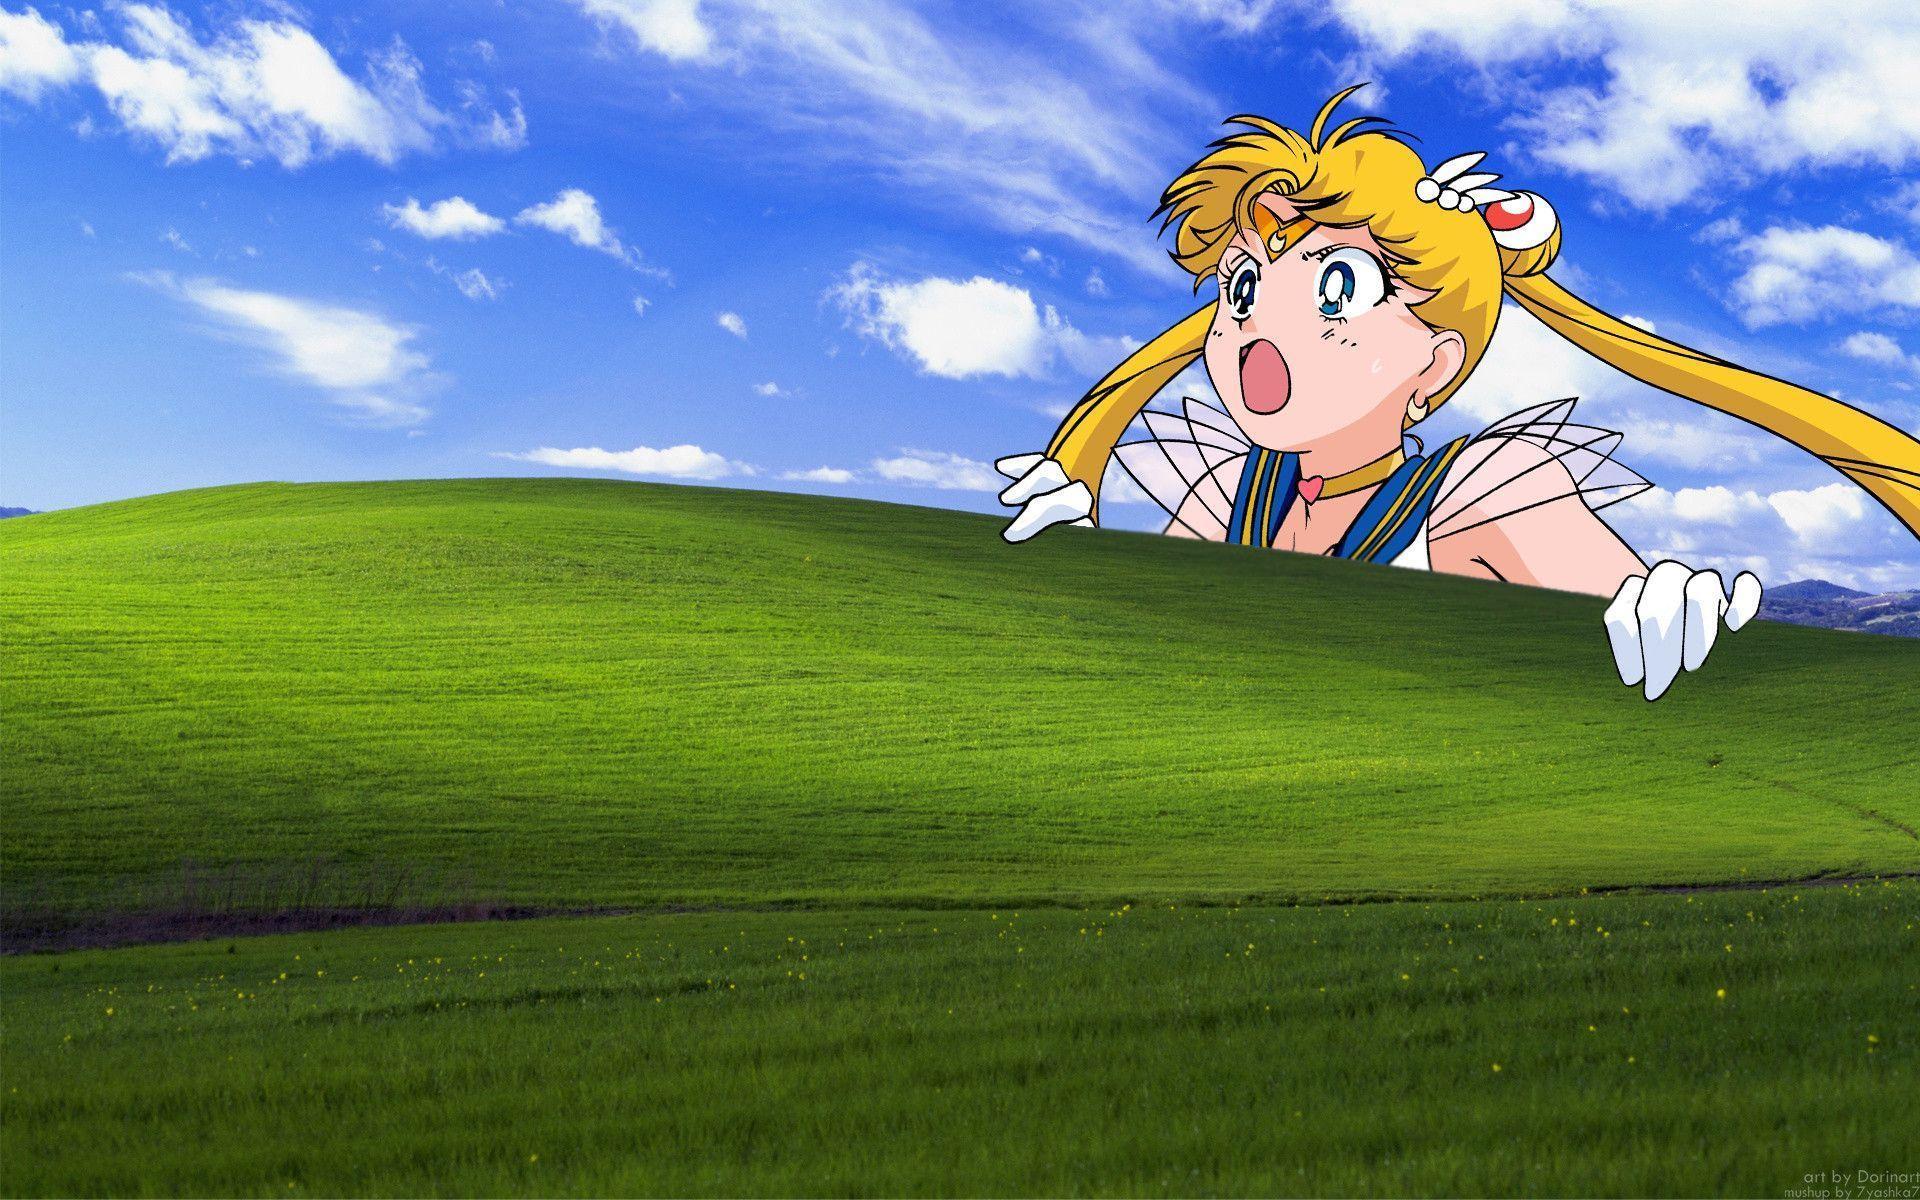 Sailor Moon Aesthetic Desktop Scenery Wallpapers Wallpaper Cave